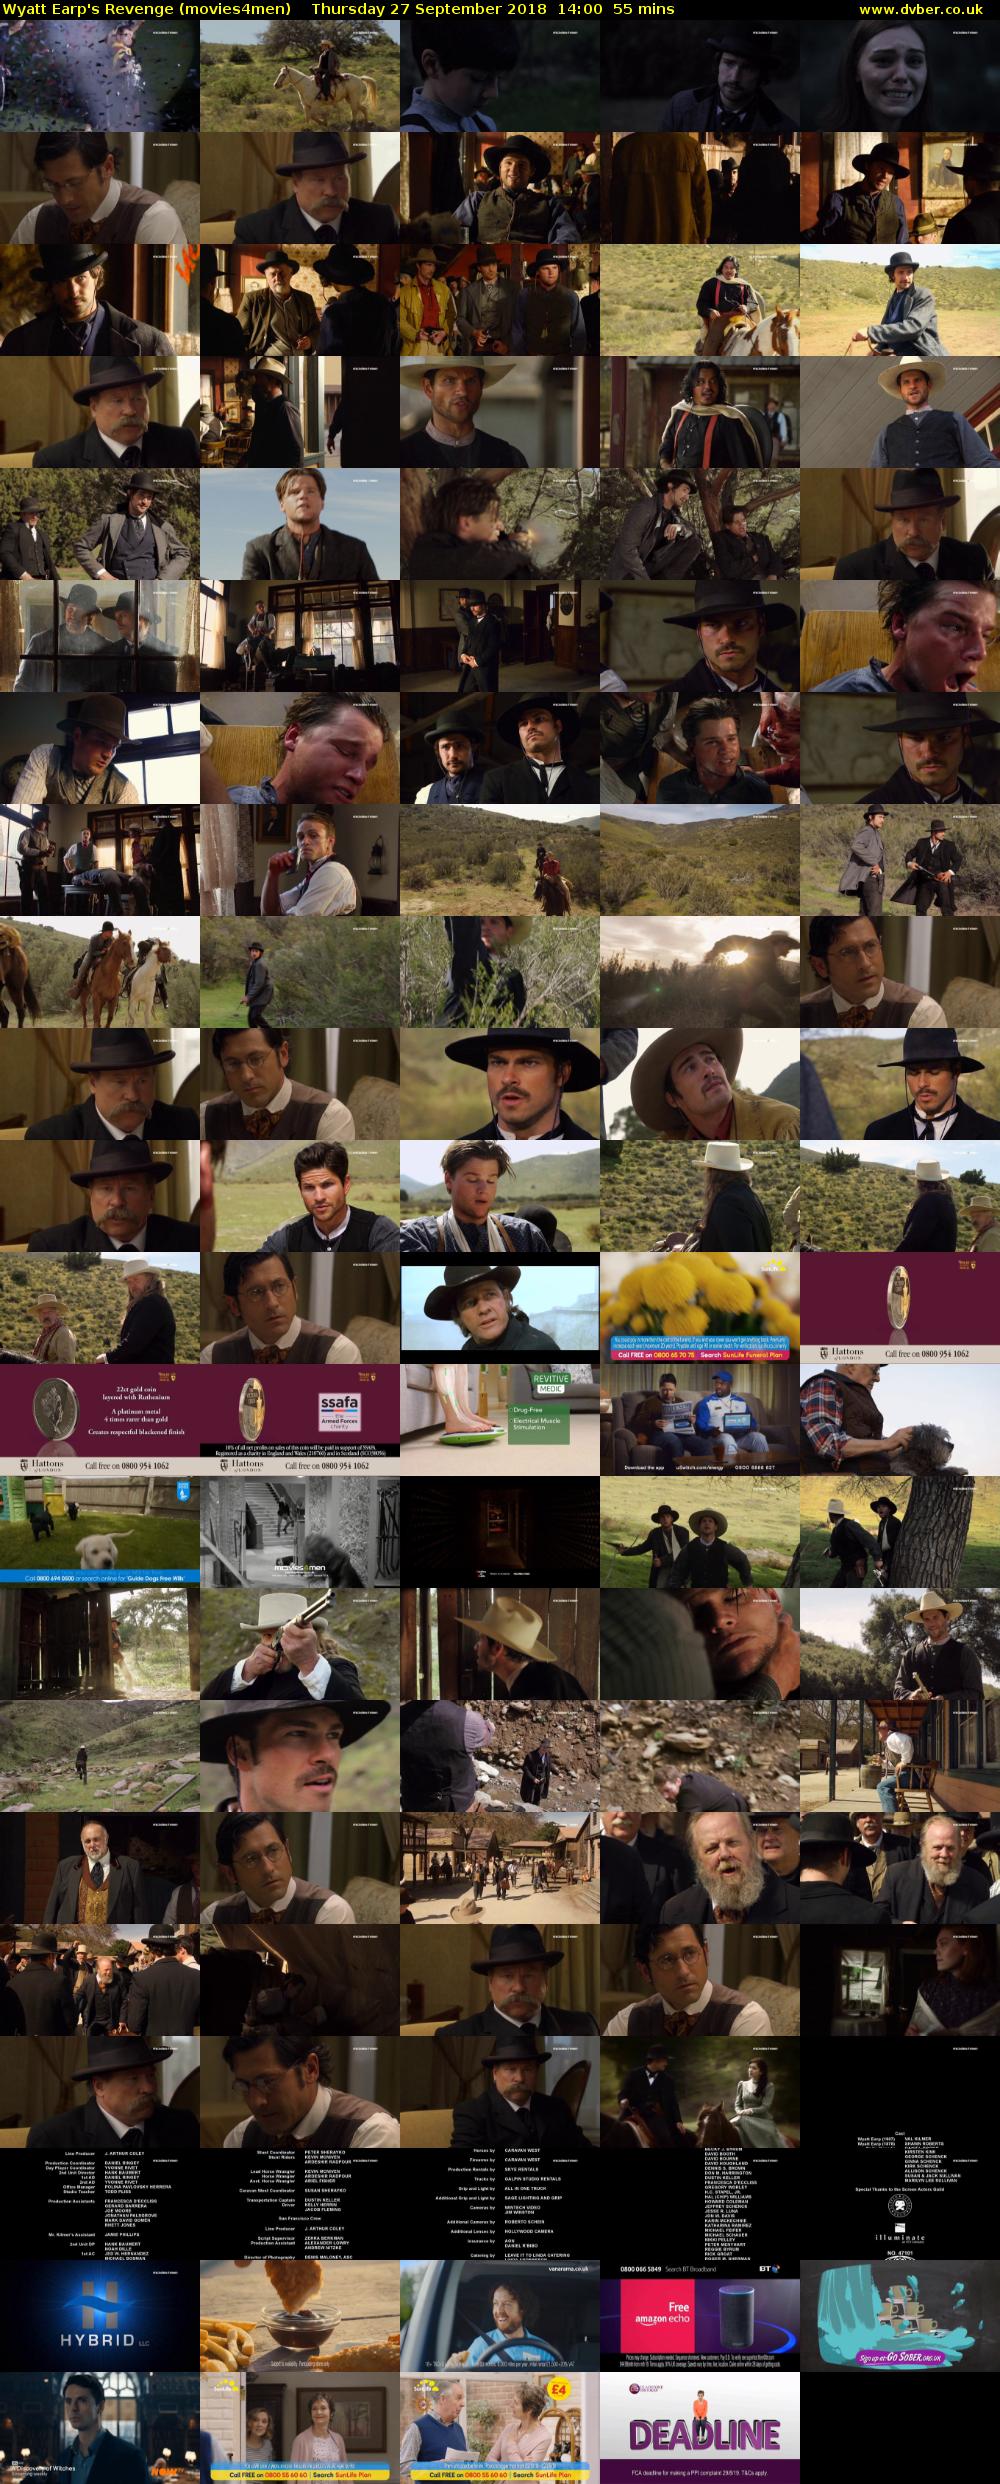 Wyatt Earp's Revenge (movies4men) Thursday 27 September 2018 14:00 - 14:55